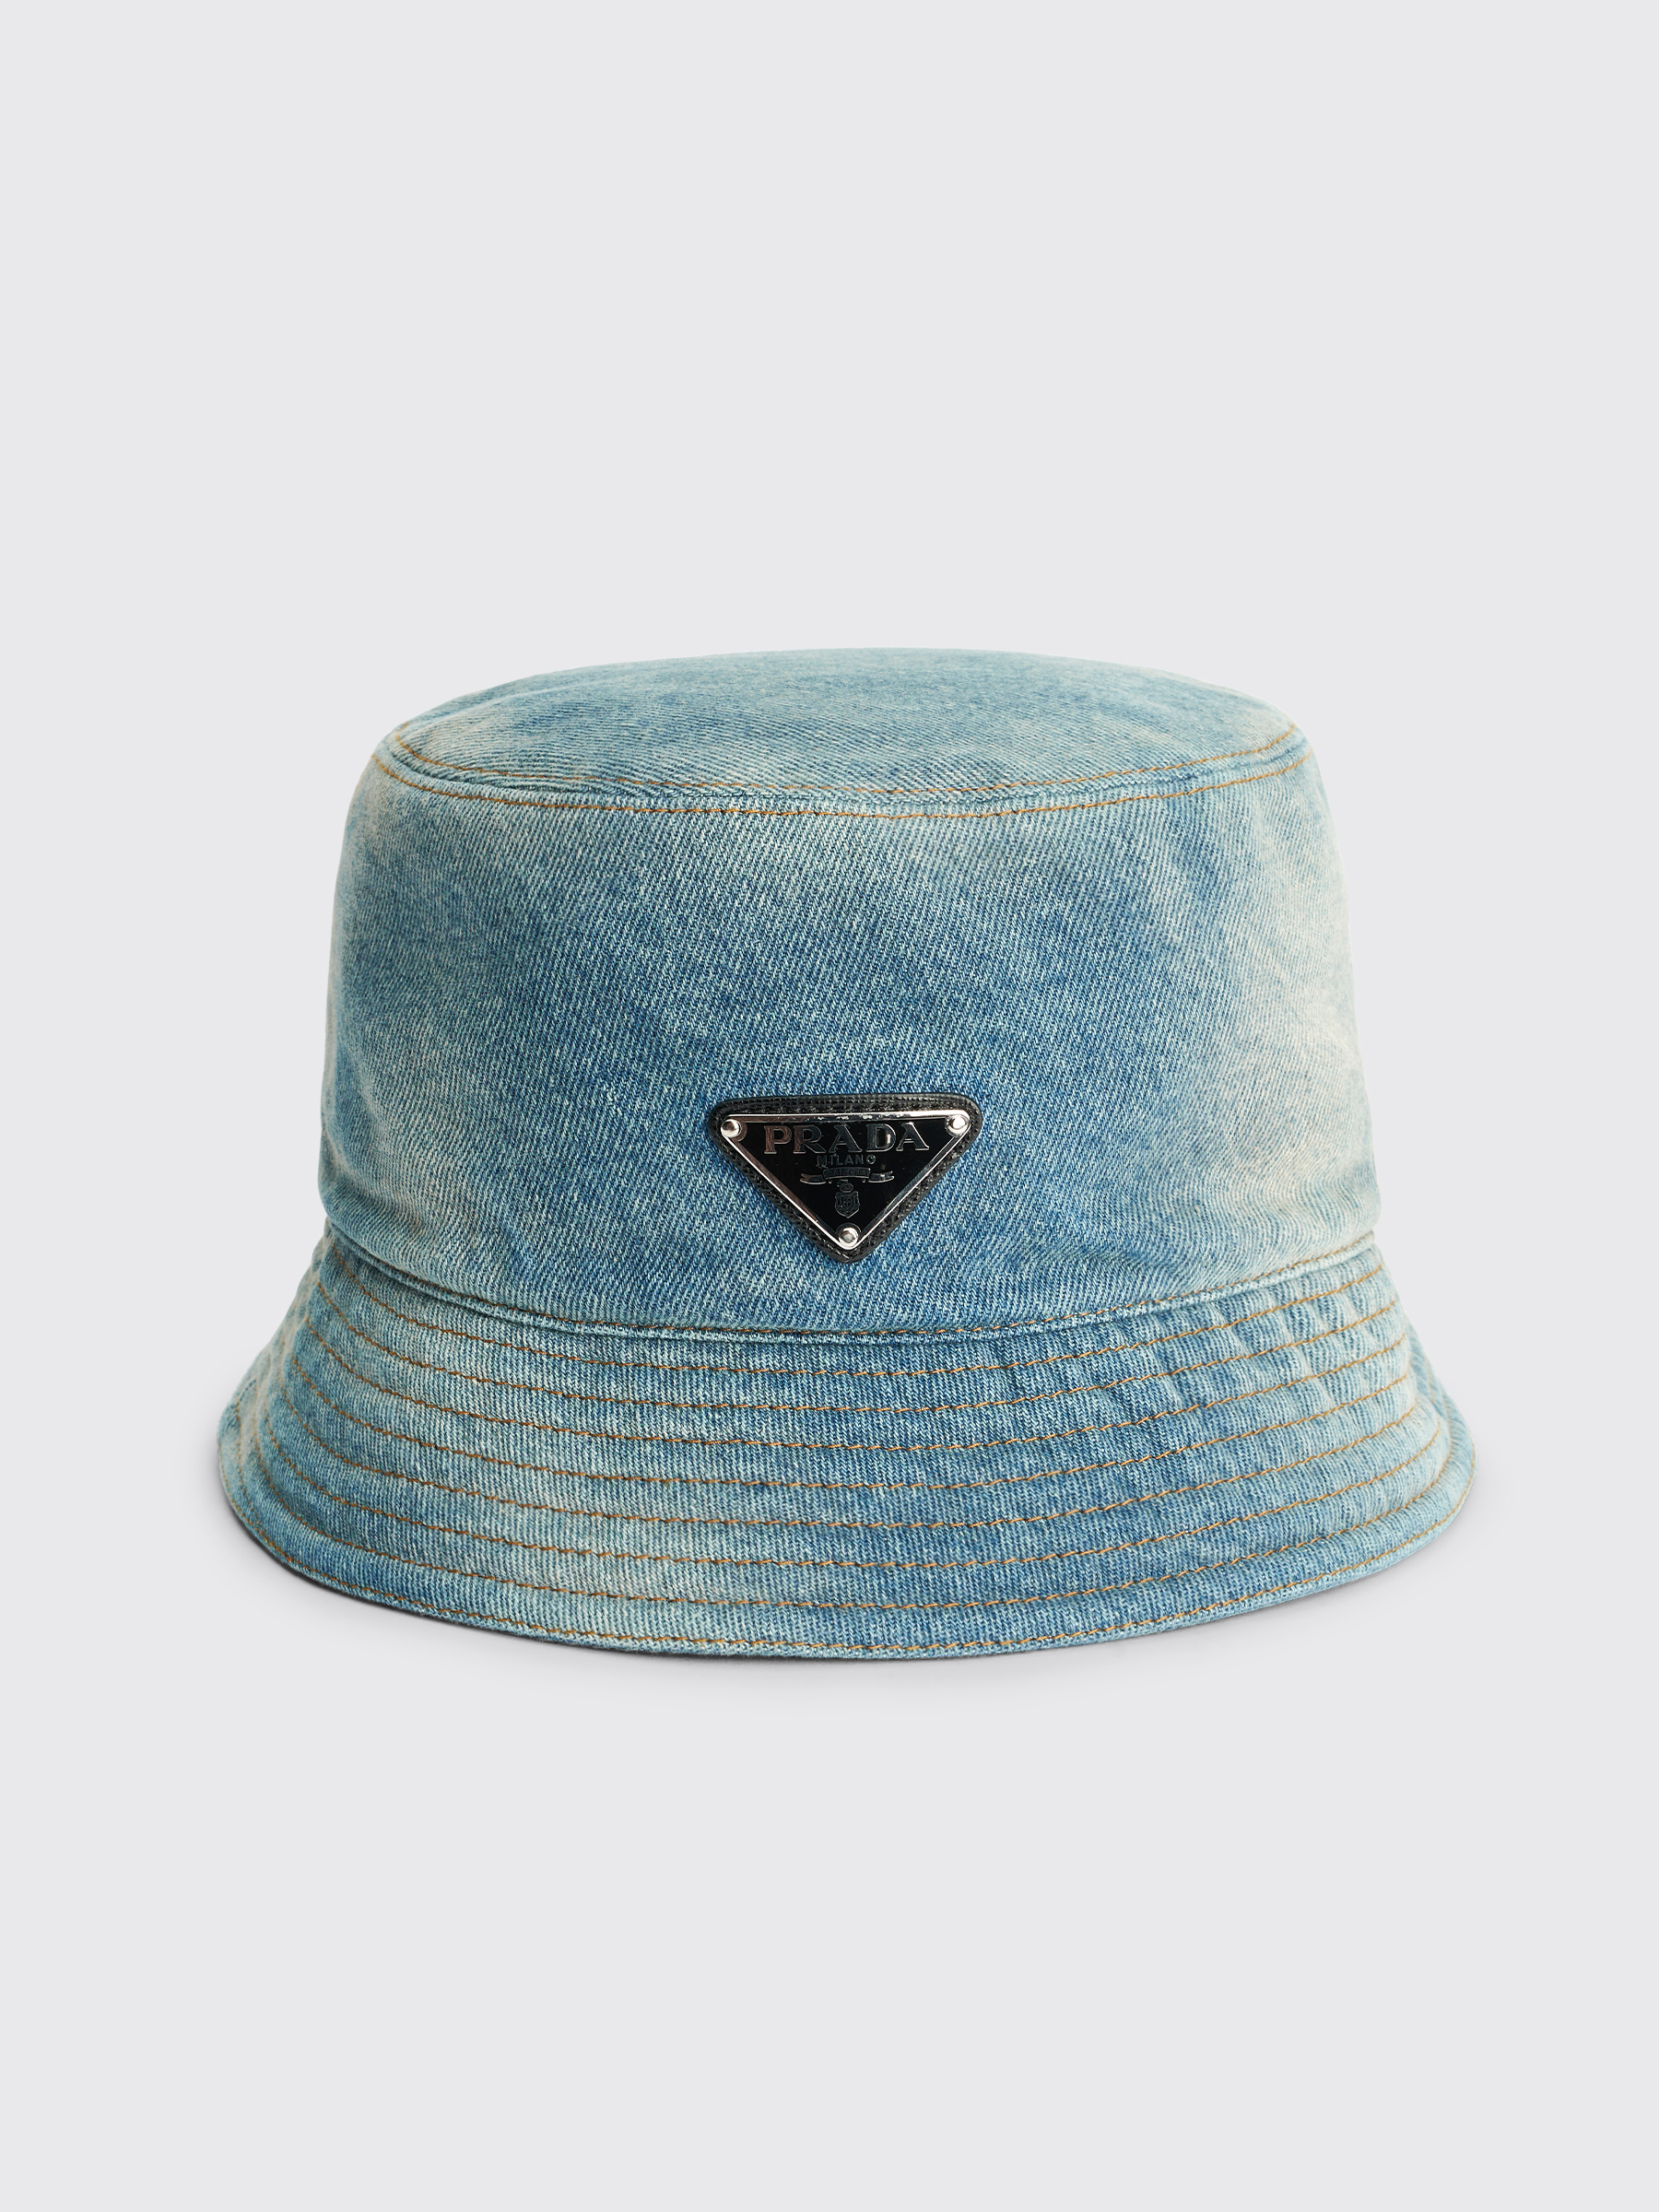 Denim Très Bien Capelli Hat - Prada Bucket Blue